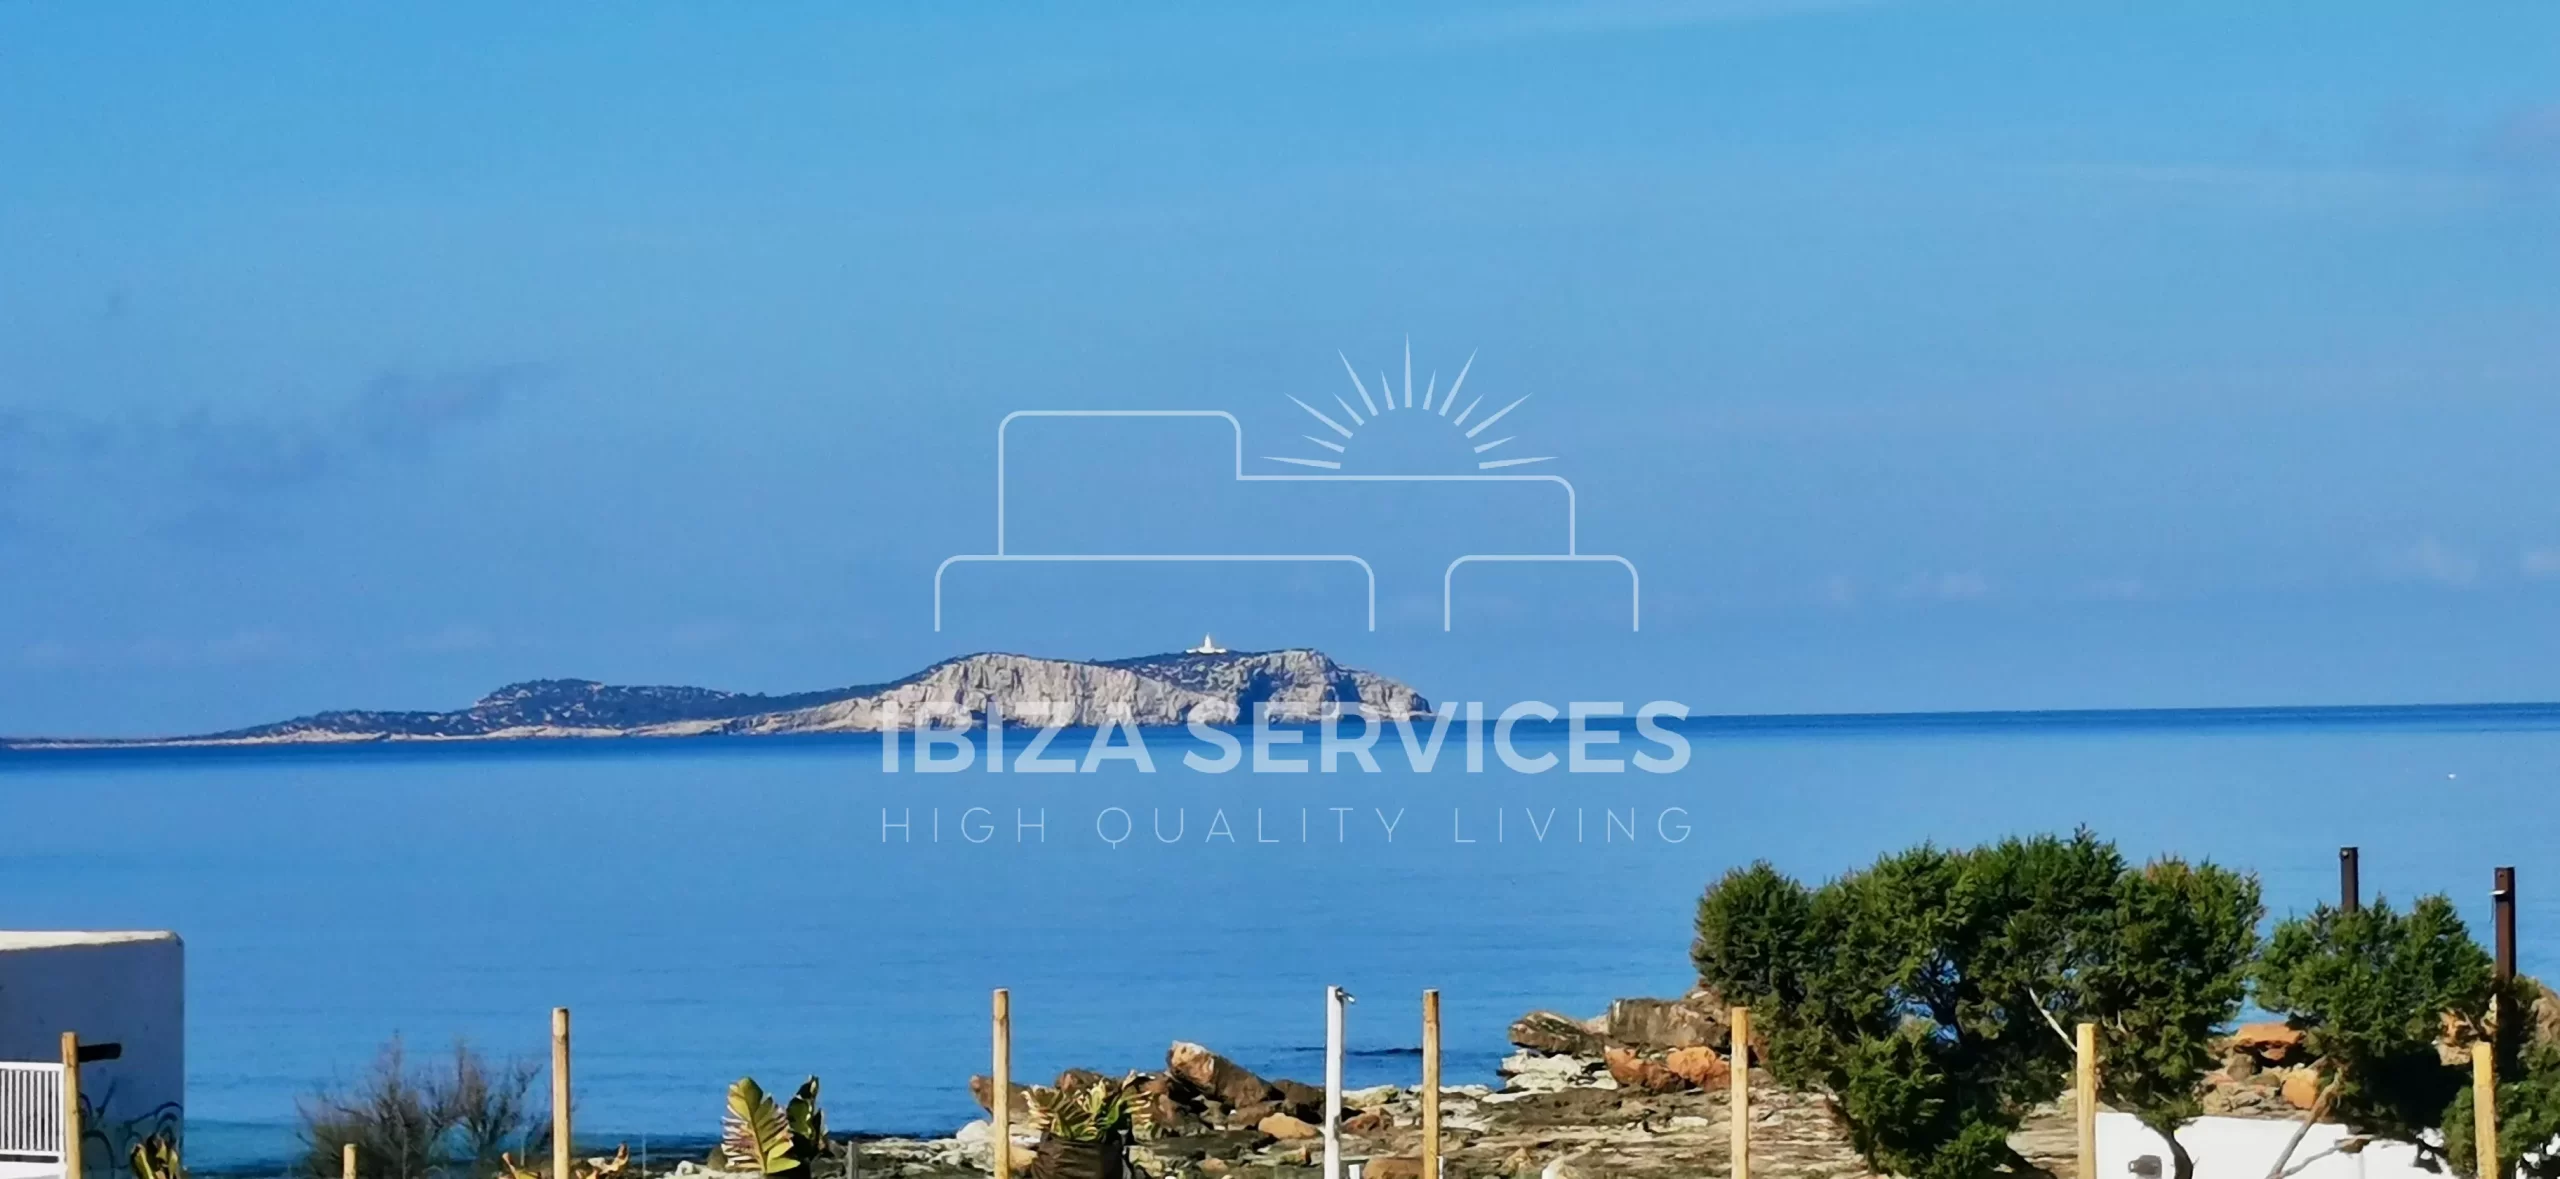 Geräumige Wohnung mit Meerblick zum Verkauf an der Westküste Ibizas.